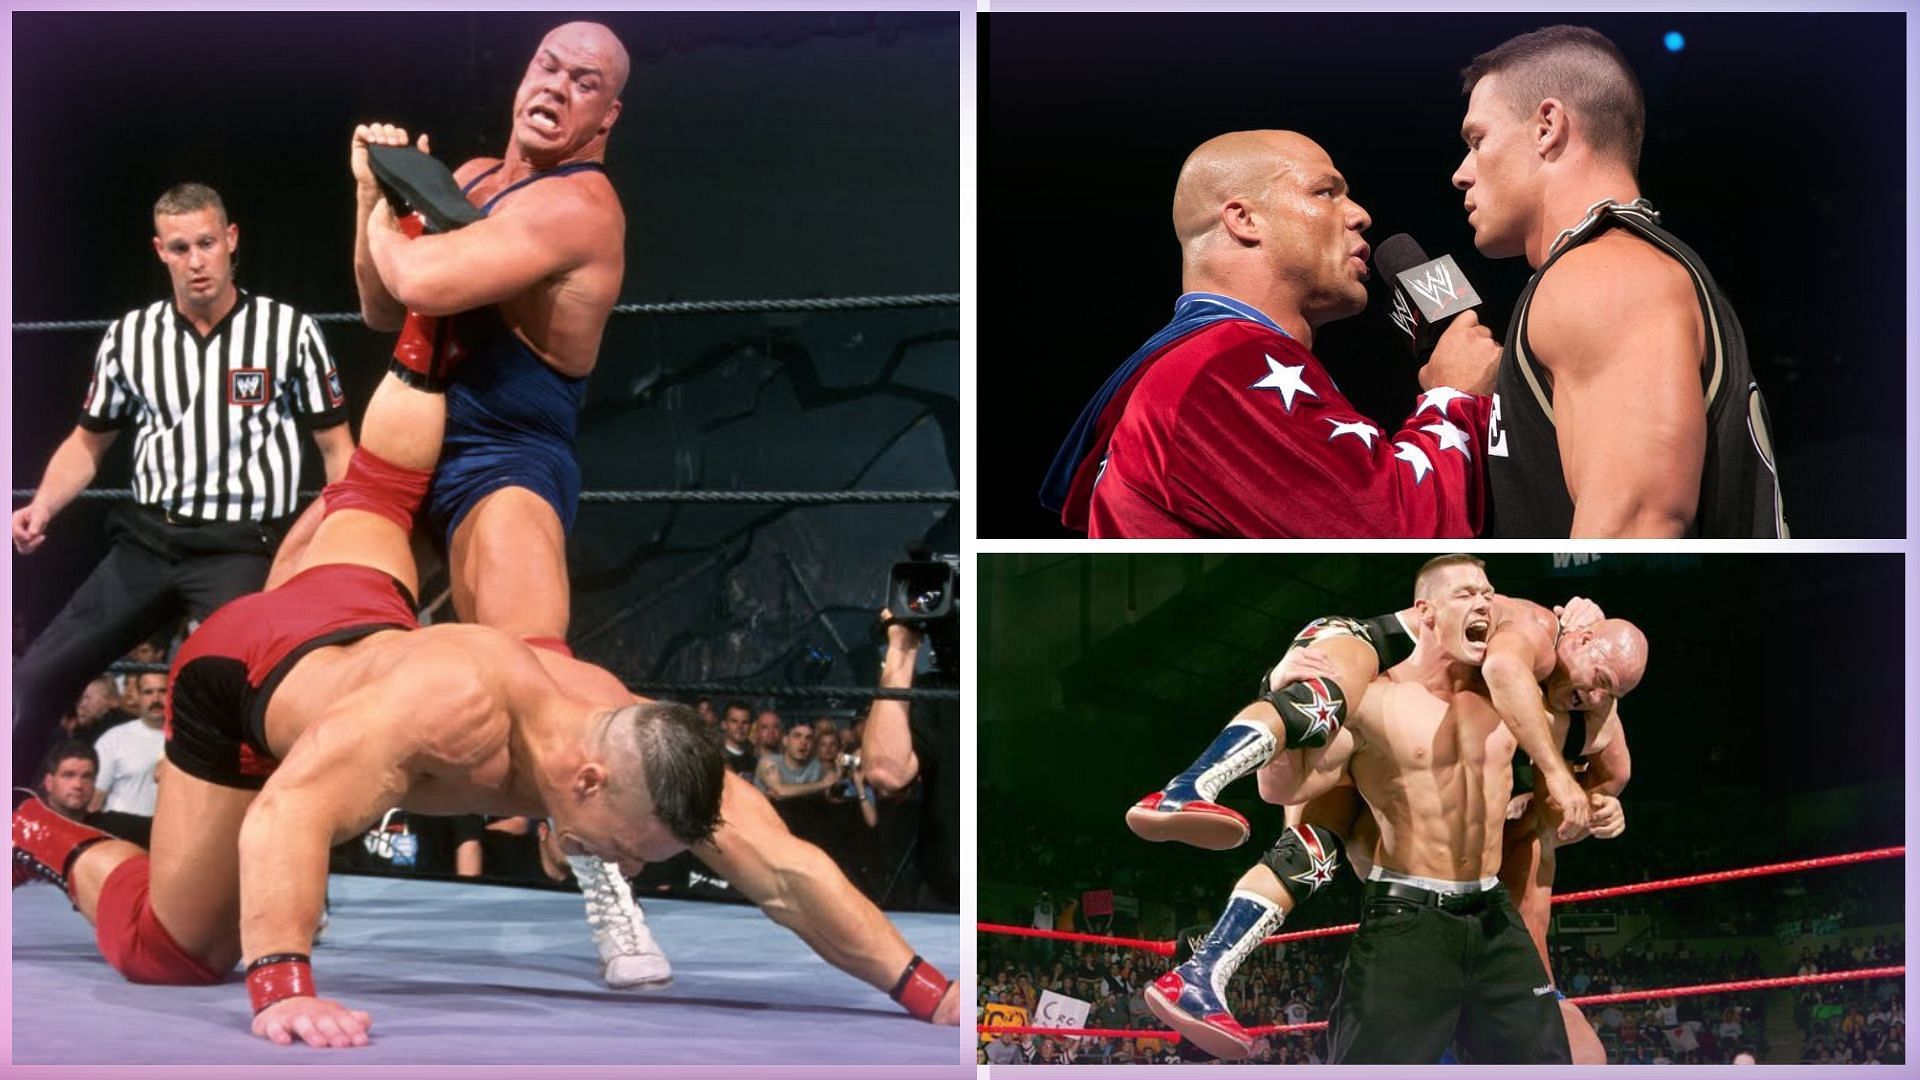 WWE Superstars Kurt Angle and John Cena